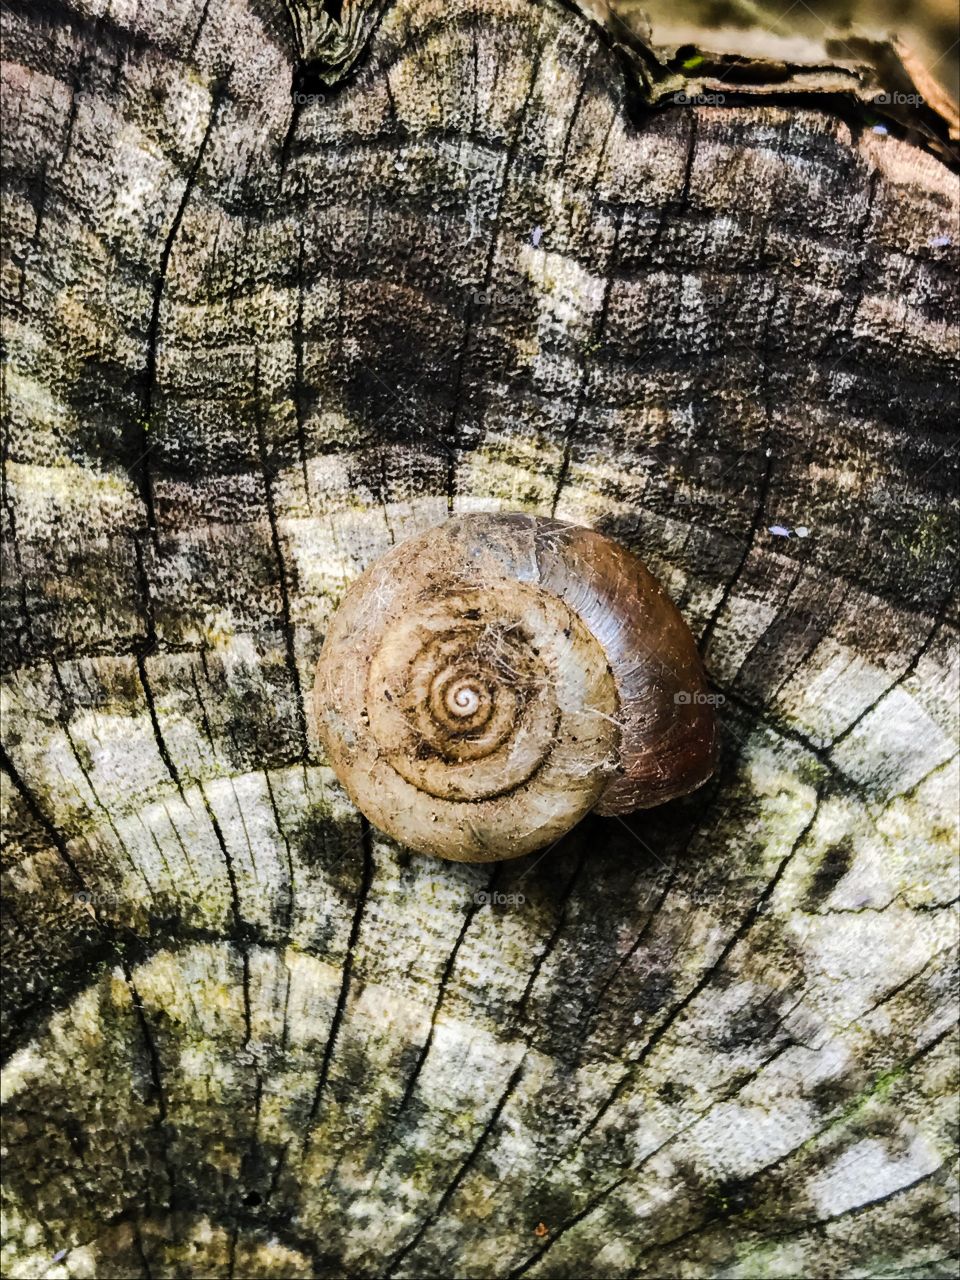 Snail shell on tree stump